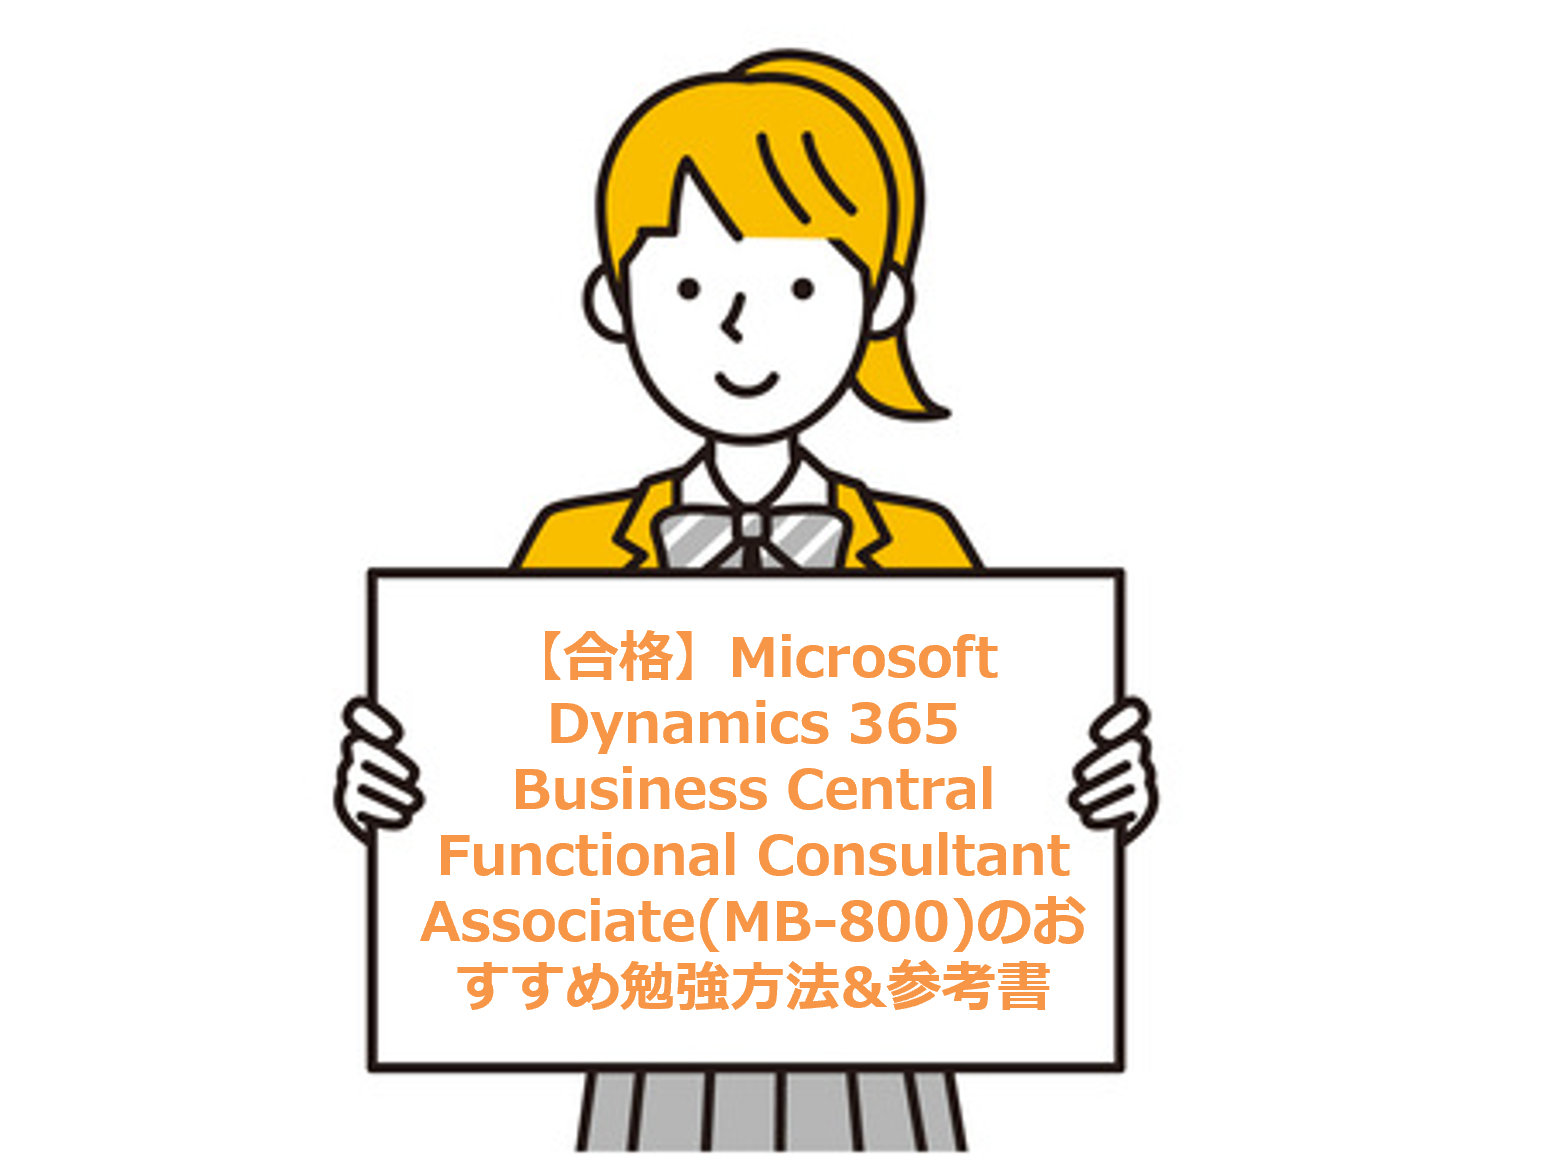 【合格】Microsoft Dynamics 365 Business Central Functional Consultant Associate(MB-800)のおすすめ勉強方法&参考書